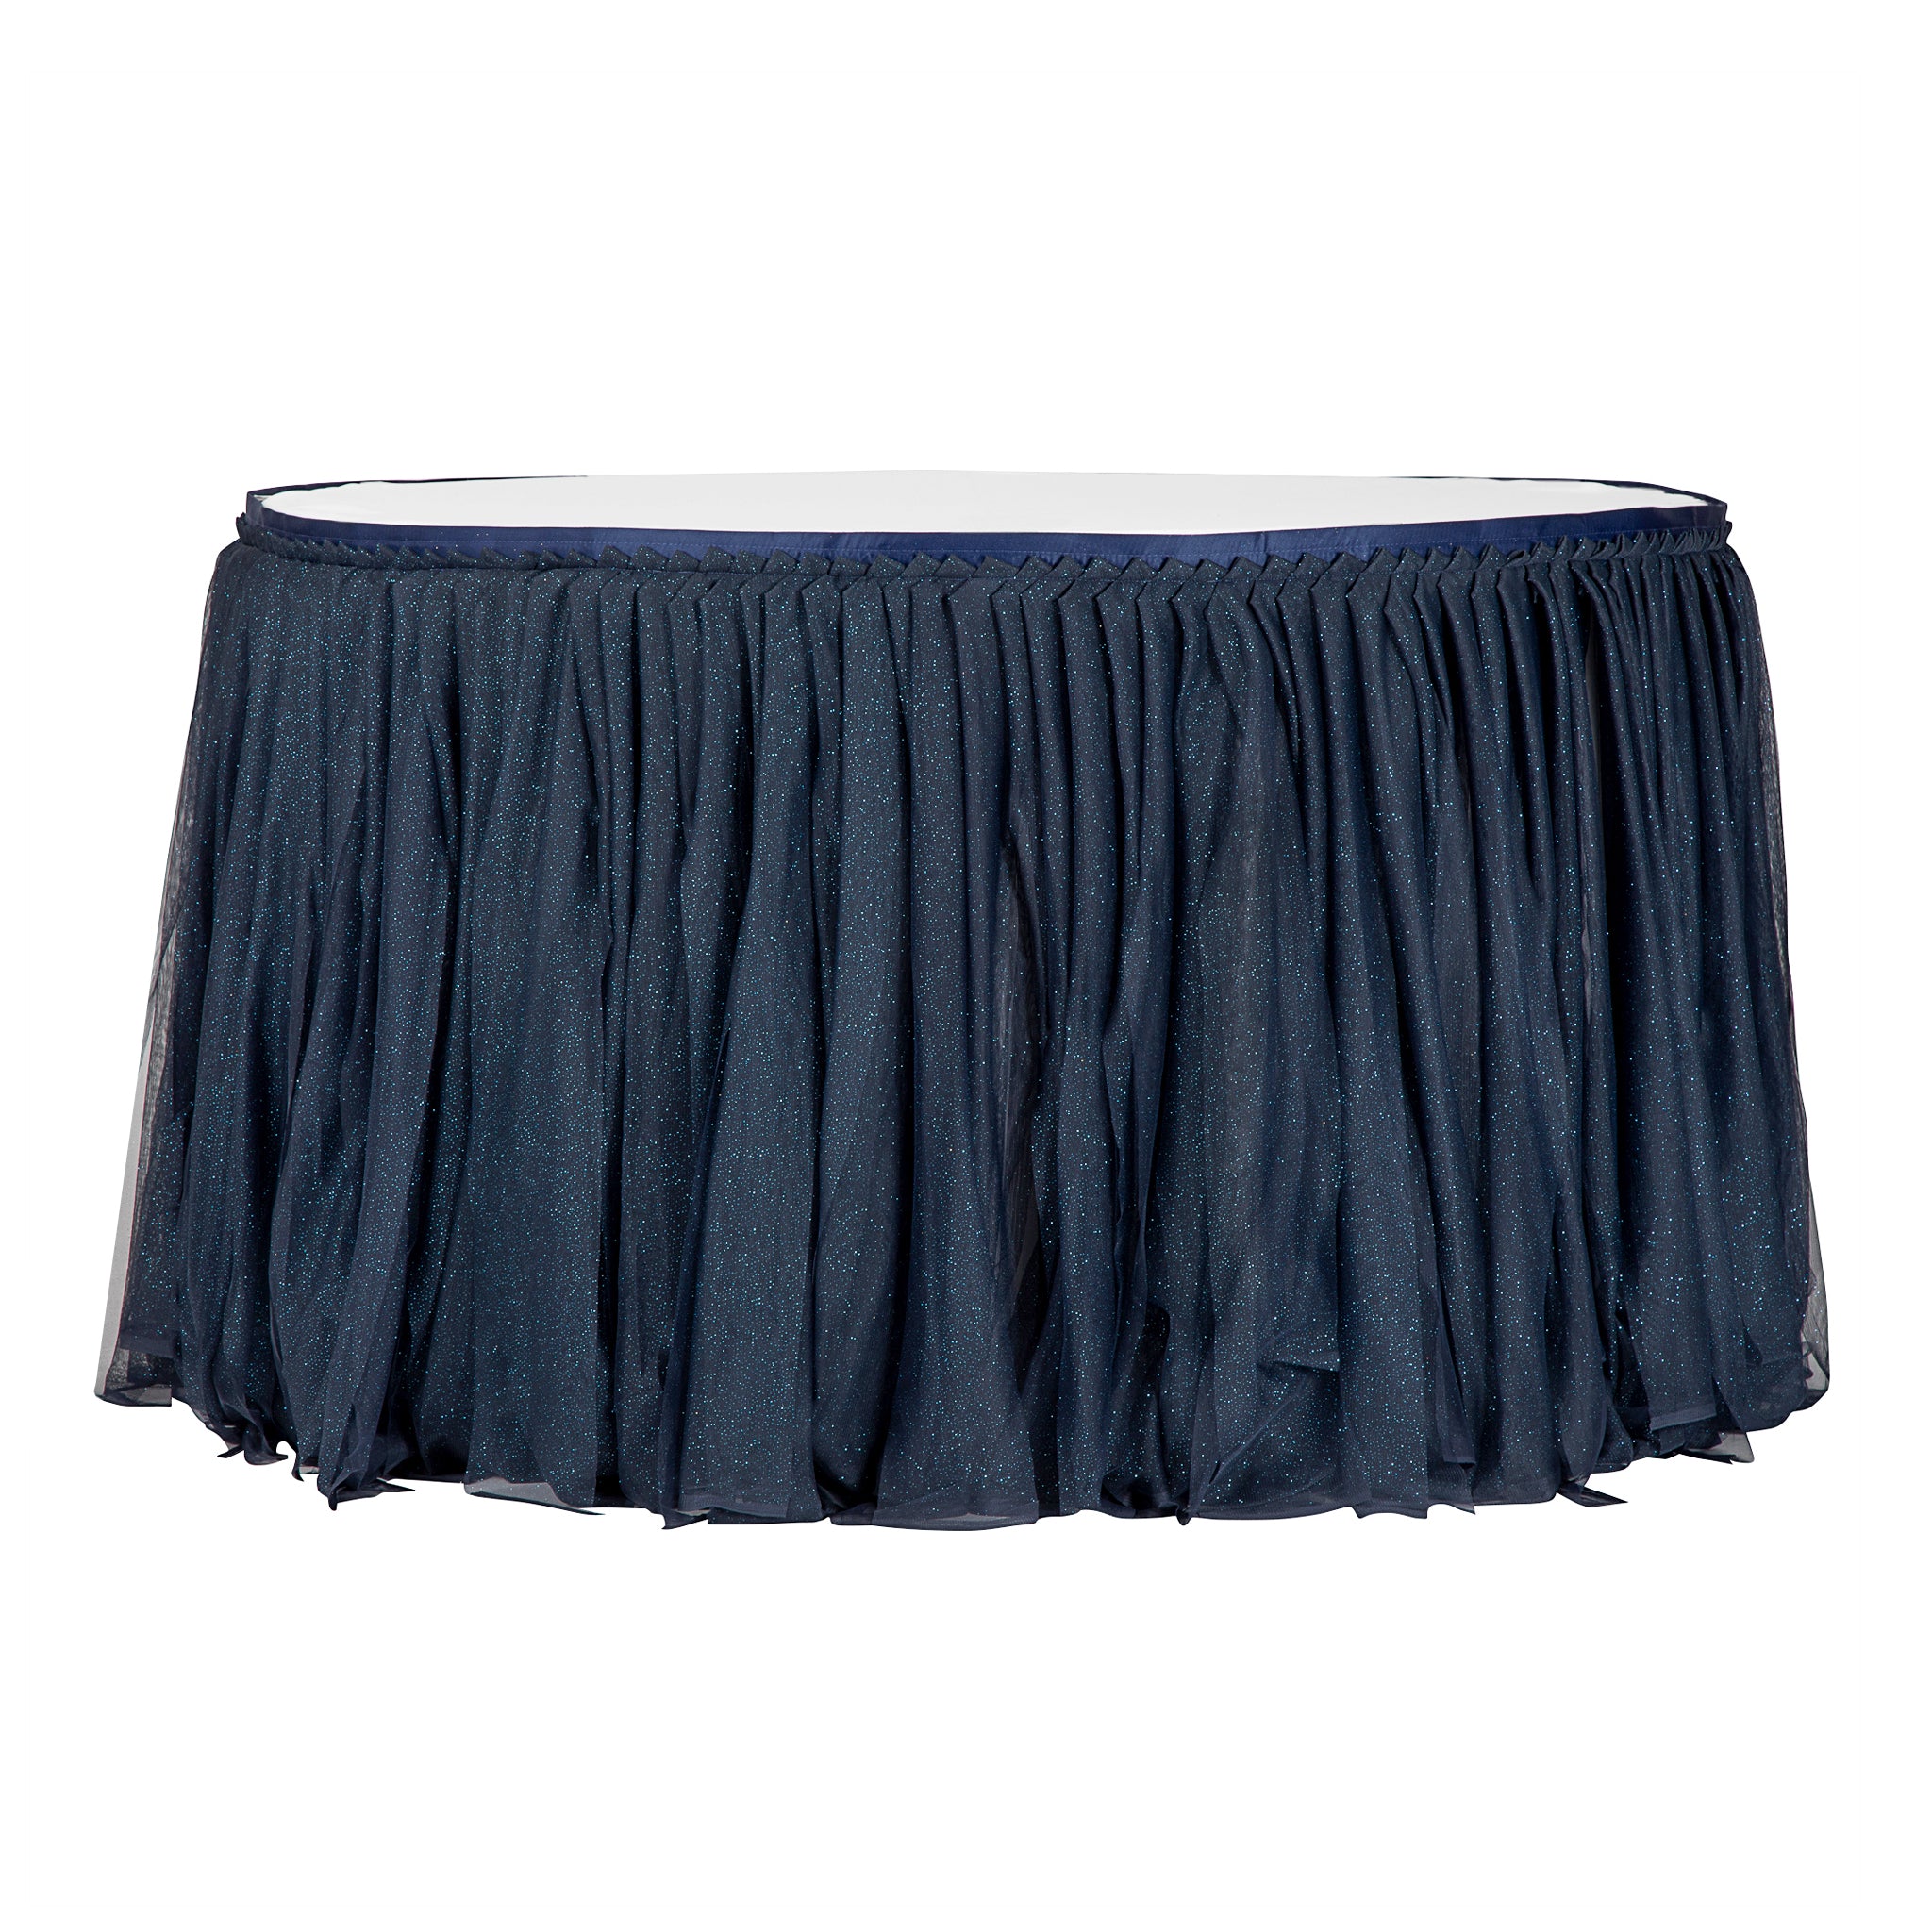 Glitter Tulle Tutu 14ft Table Skirt - Navy Blue